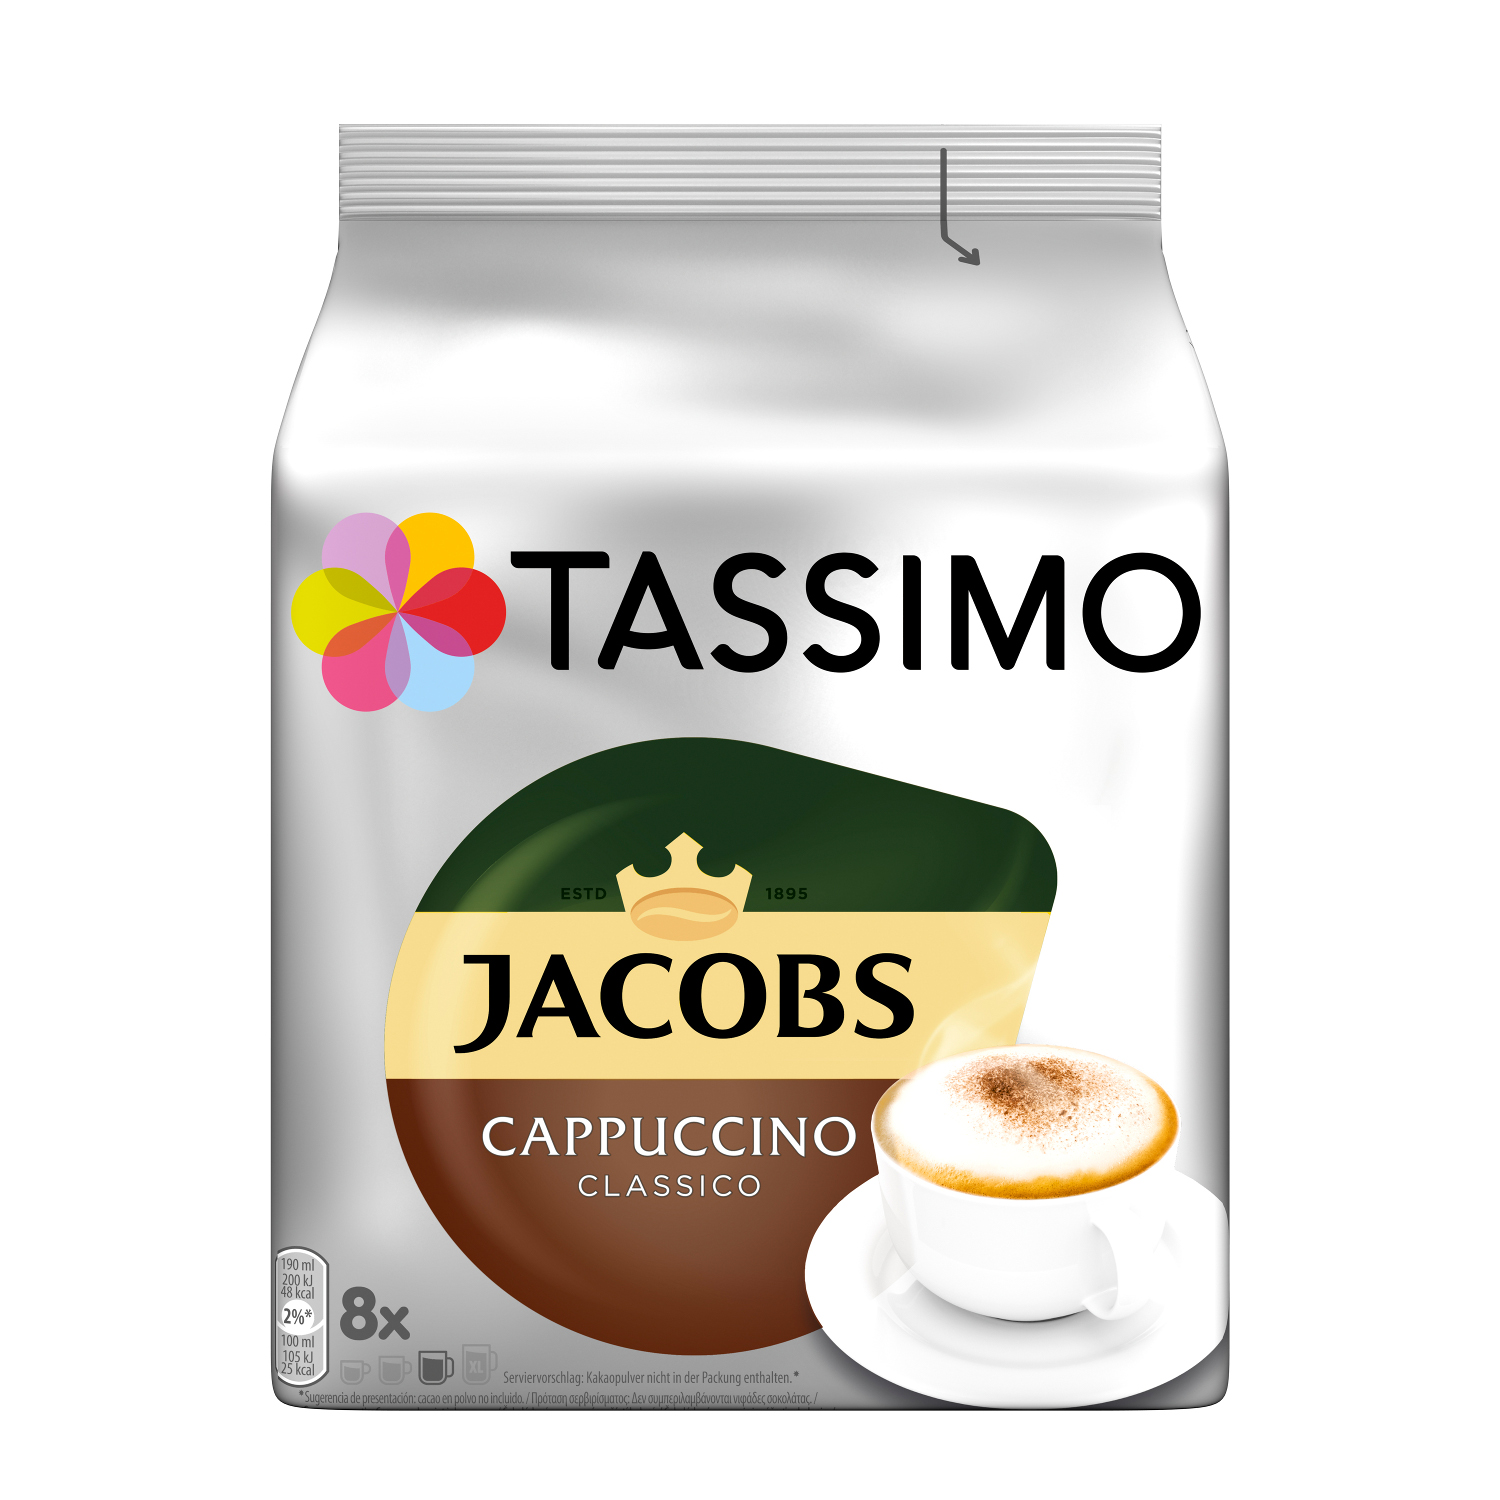 TASSIMO Creamy Latte Kaffeekapseln Macchiato Collection Maschine Cappuccino Classico (T-Disc System)) (Tassimo Milka